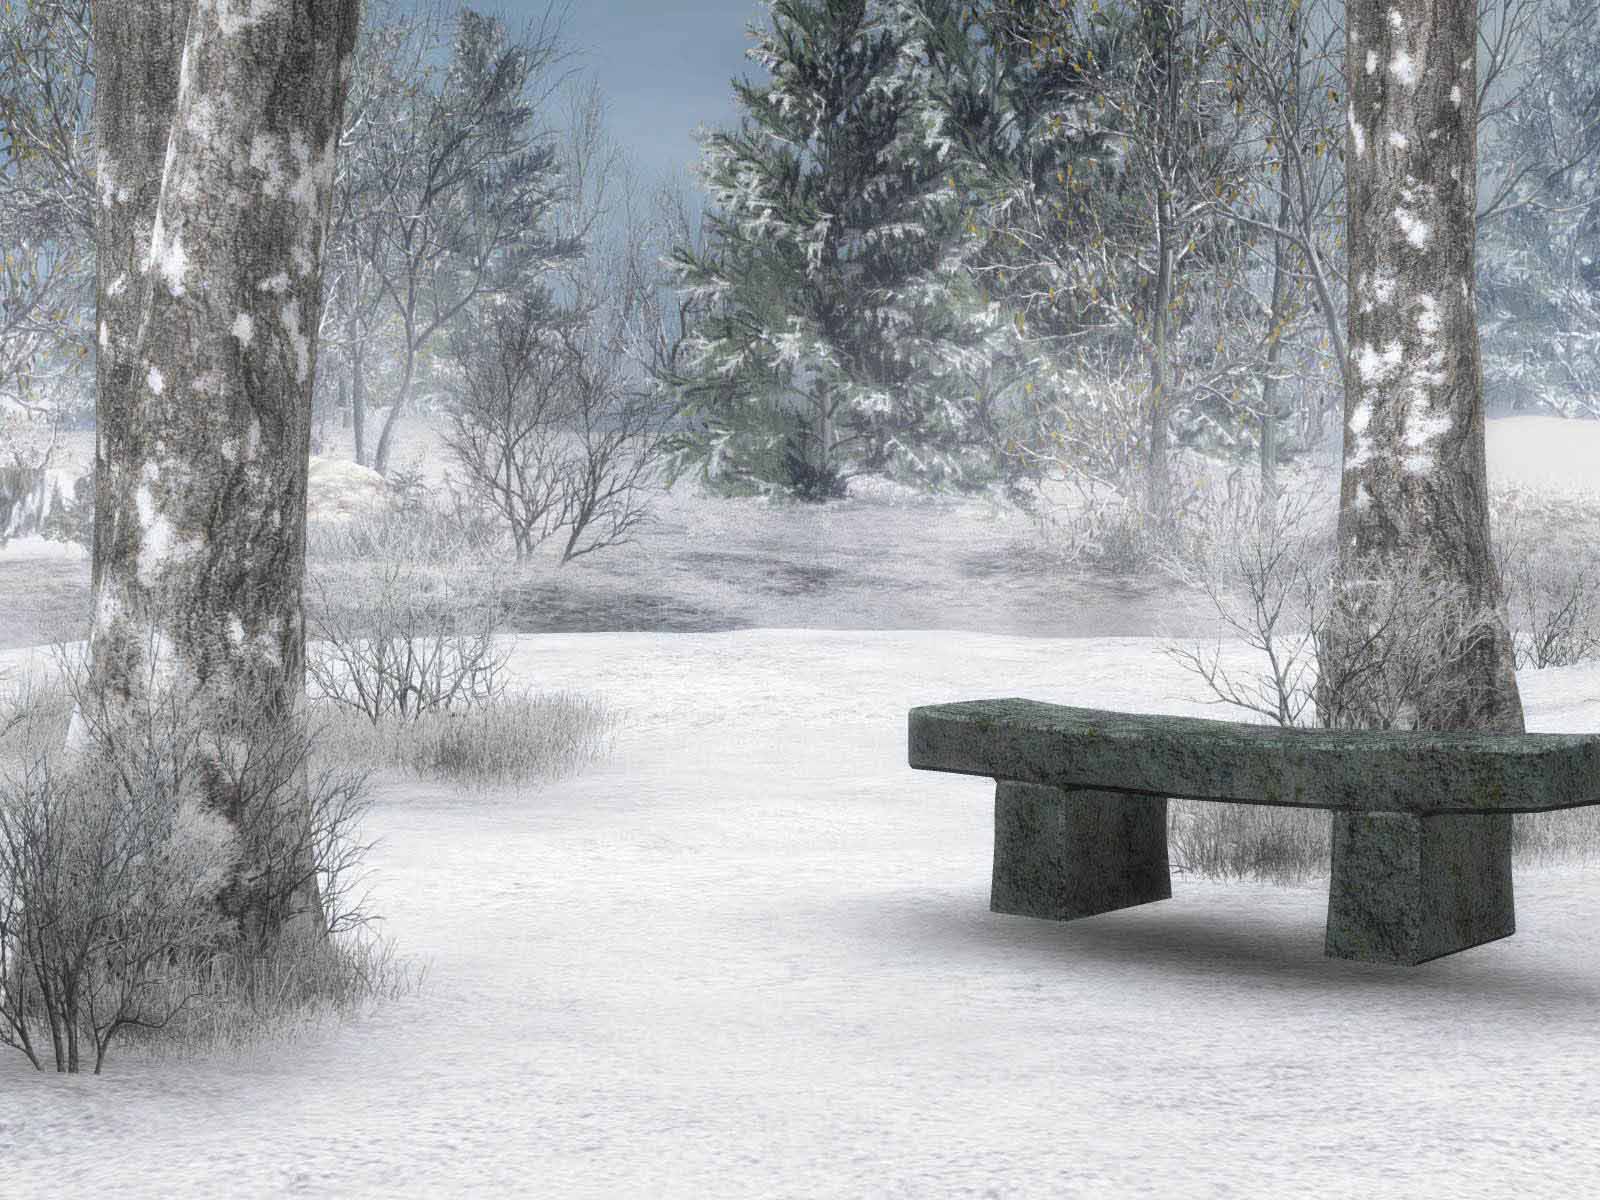 HD Wallpapers Winter Scenes for Desktop